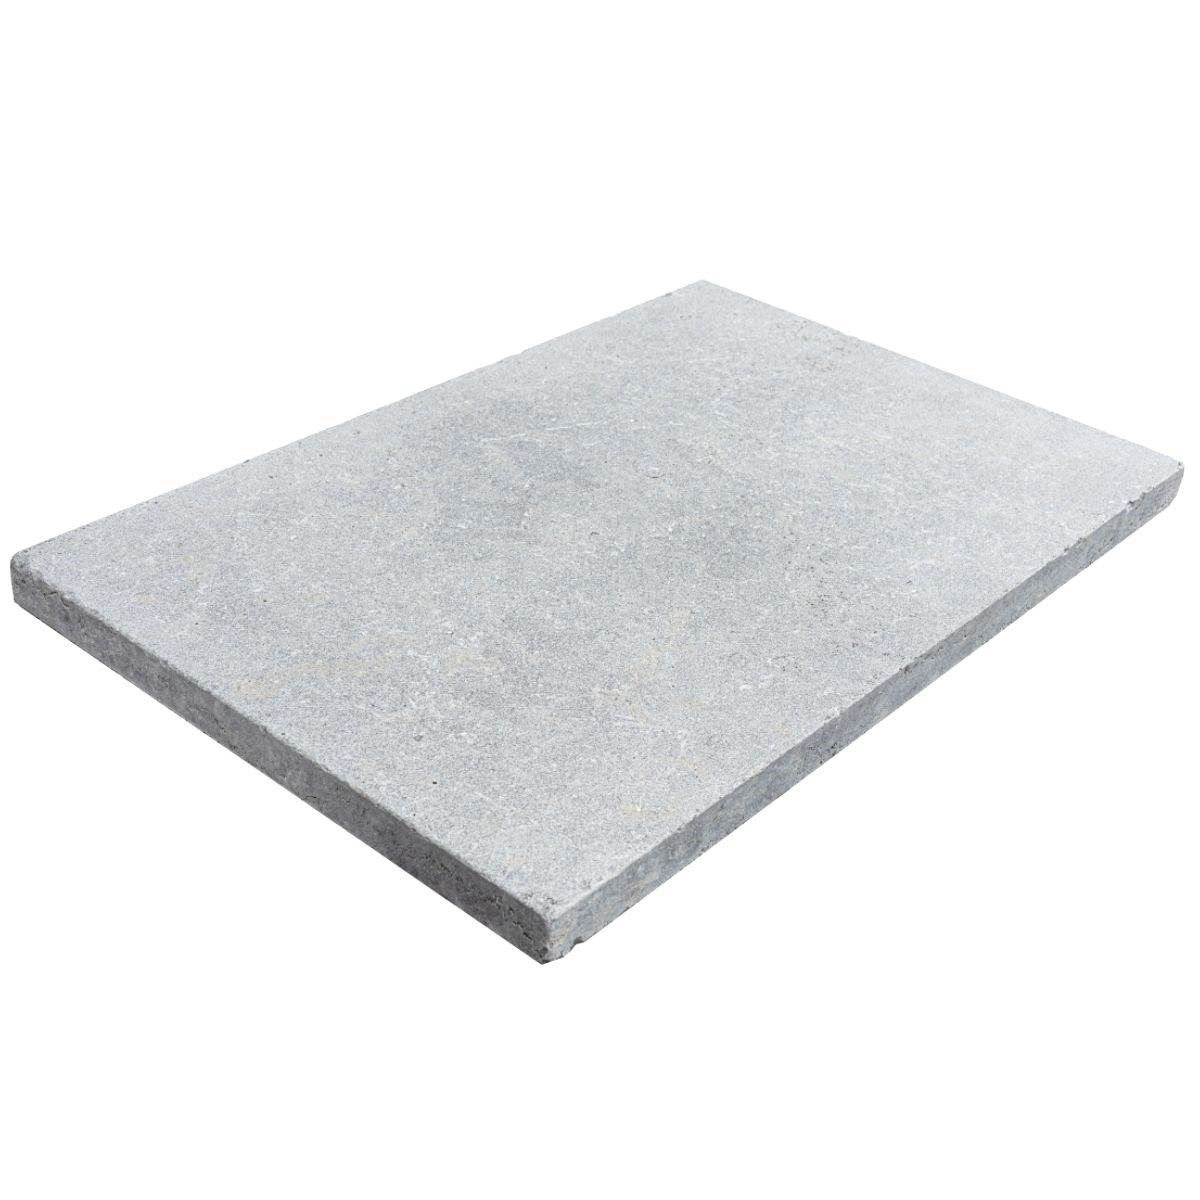 viviana grey natural stone outdoor tile